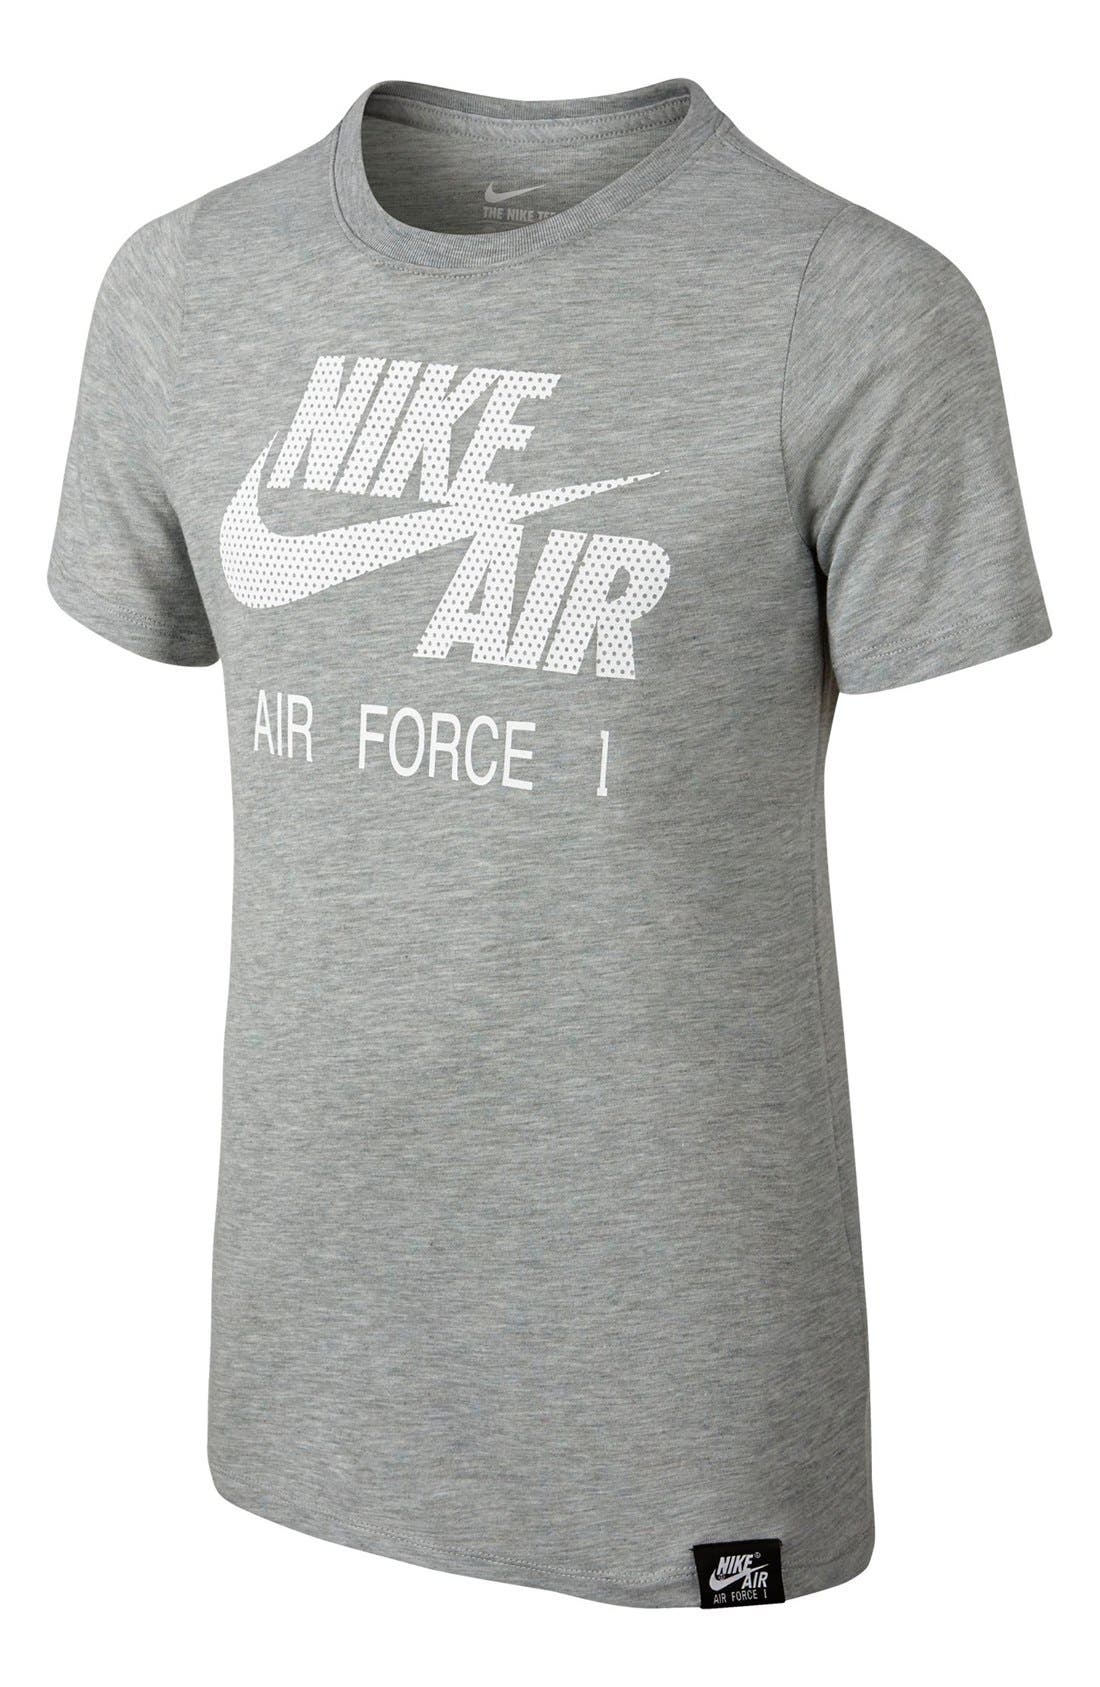 air force 1 shirt